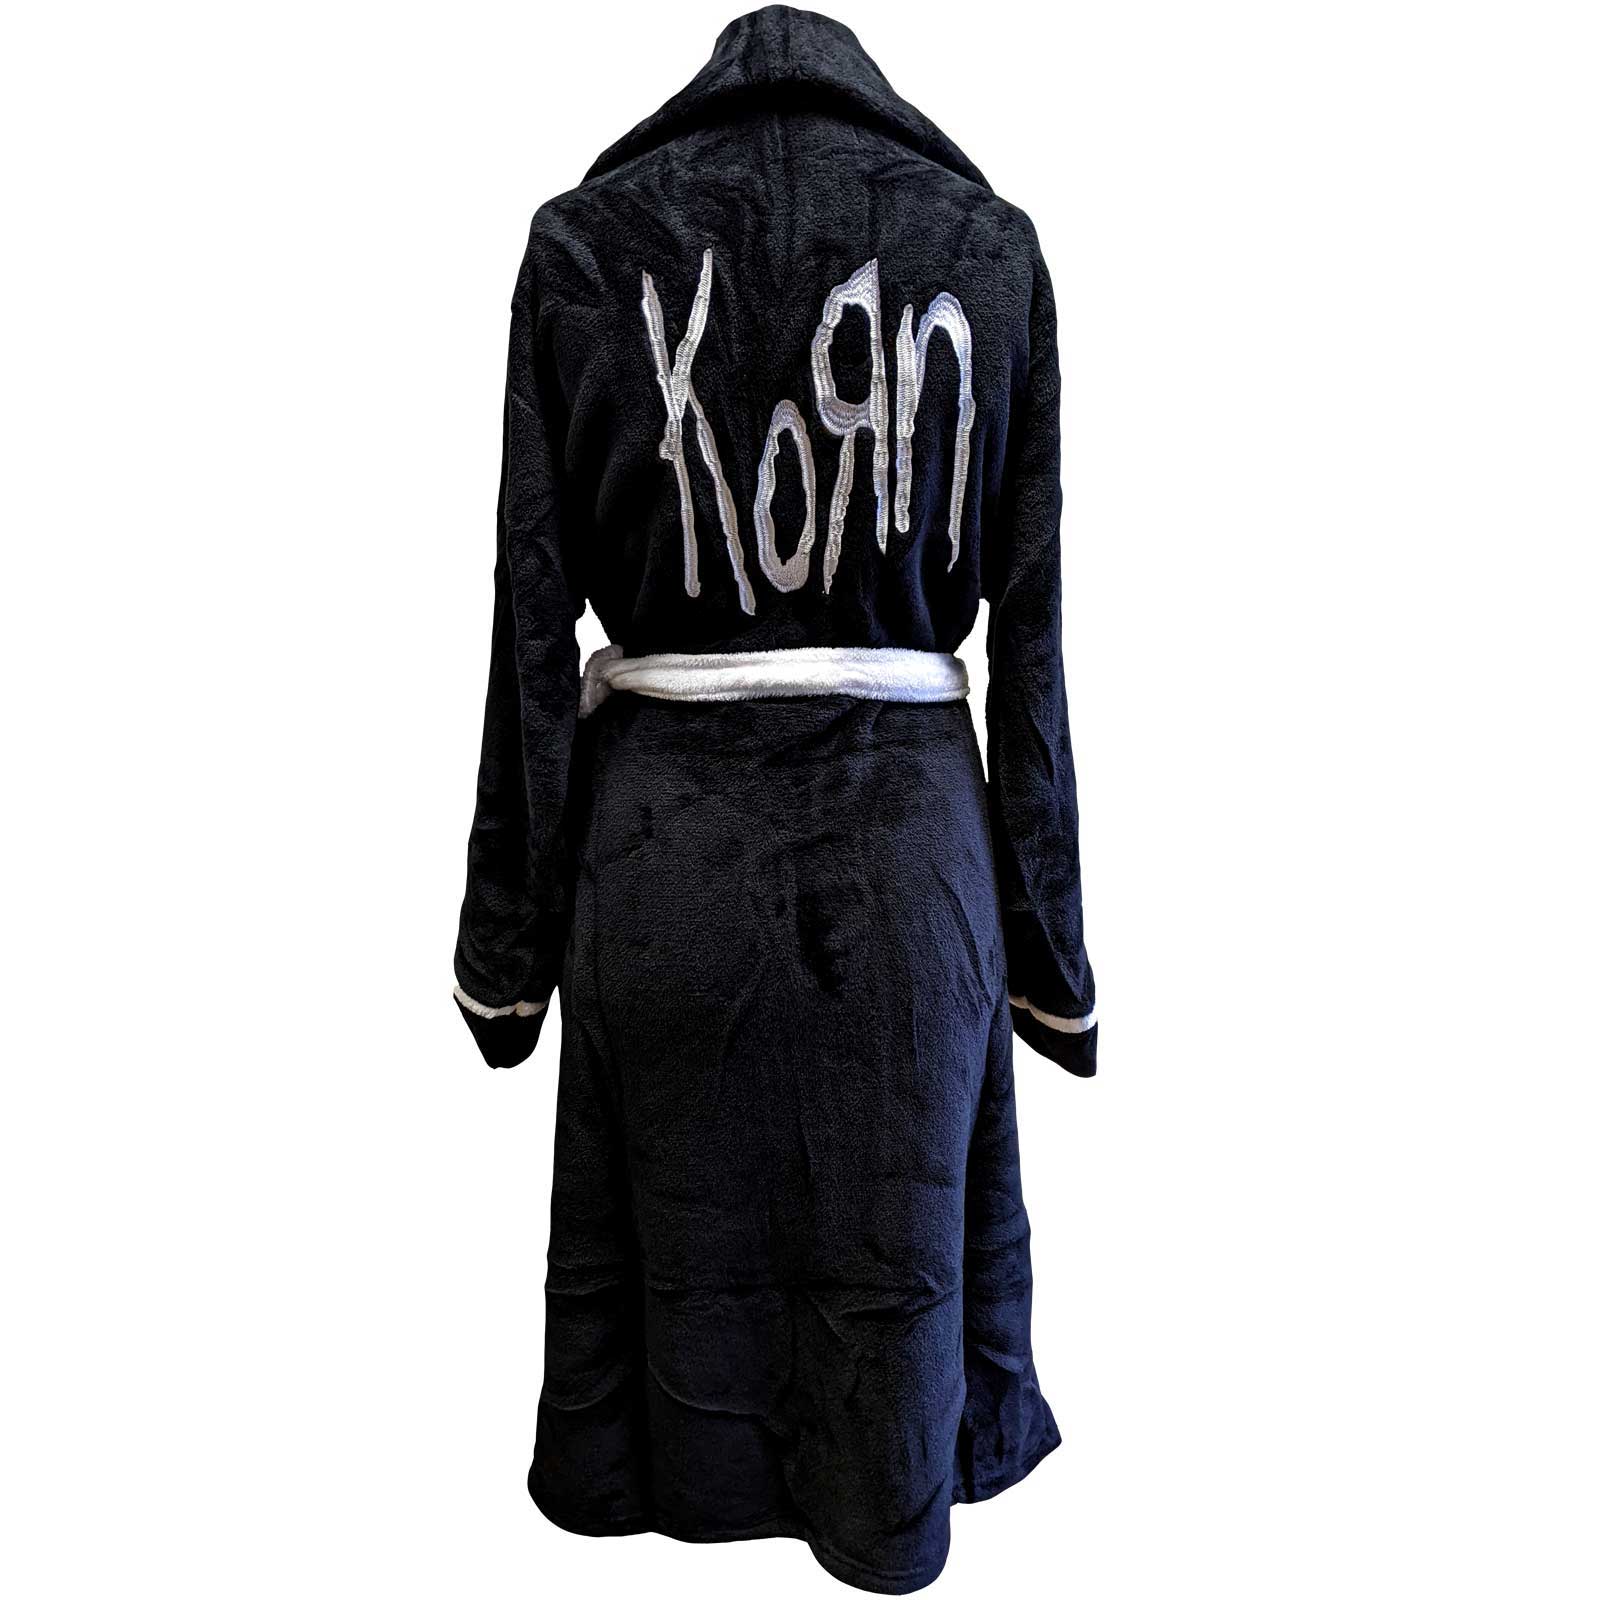 Korn Peignoir - Création de logo - Conception musicale sous licence officielle - Expédition mondiale